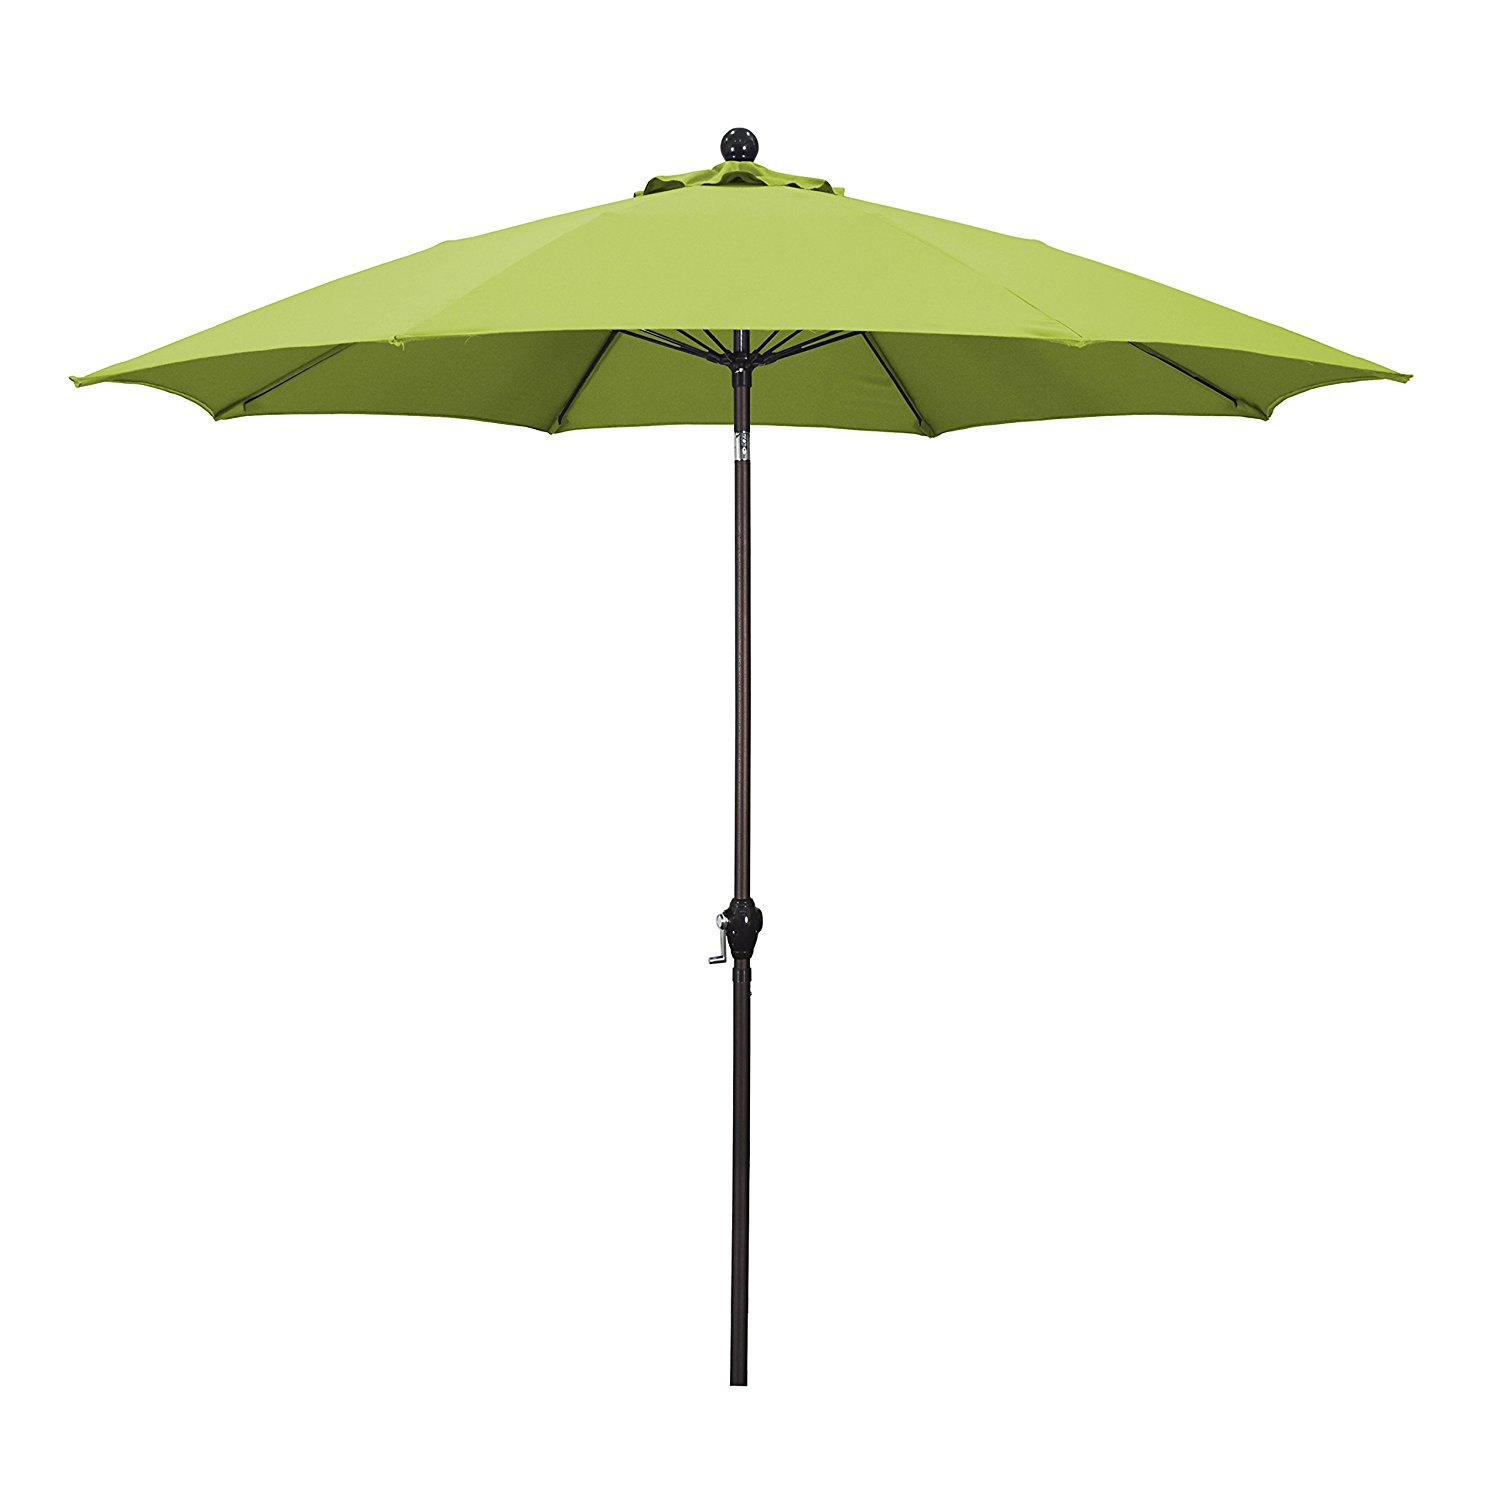 Amazon.com : California Umbrella 9' Round Aluminum Pole Fiberglass ...